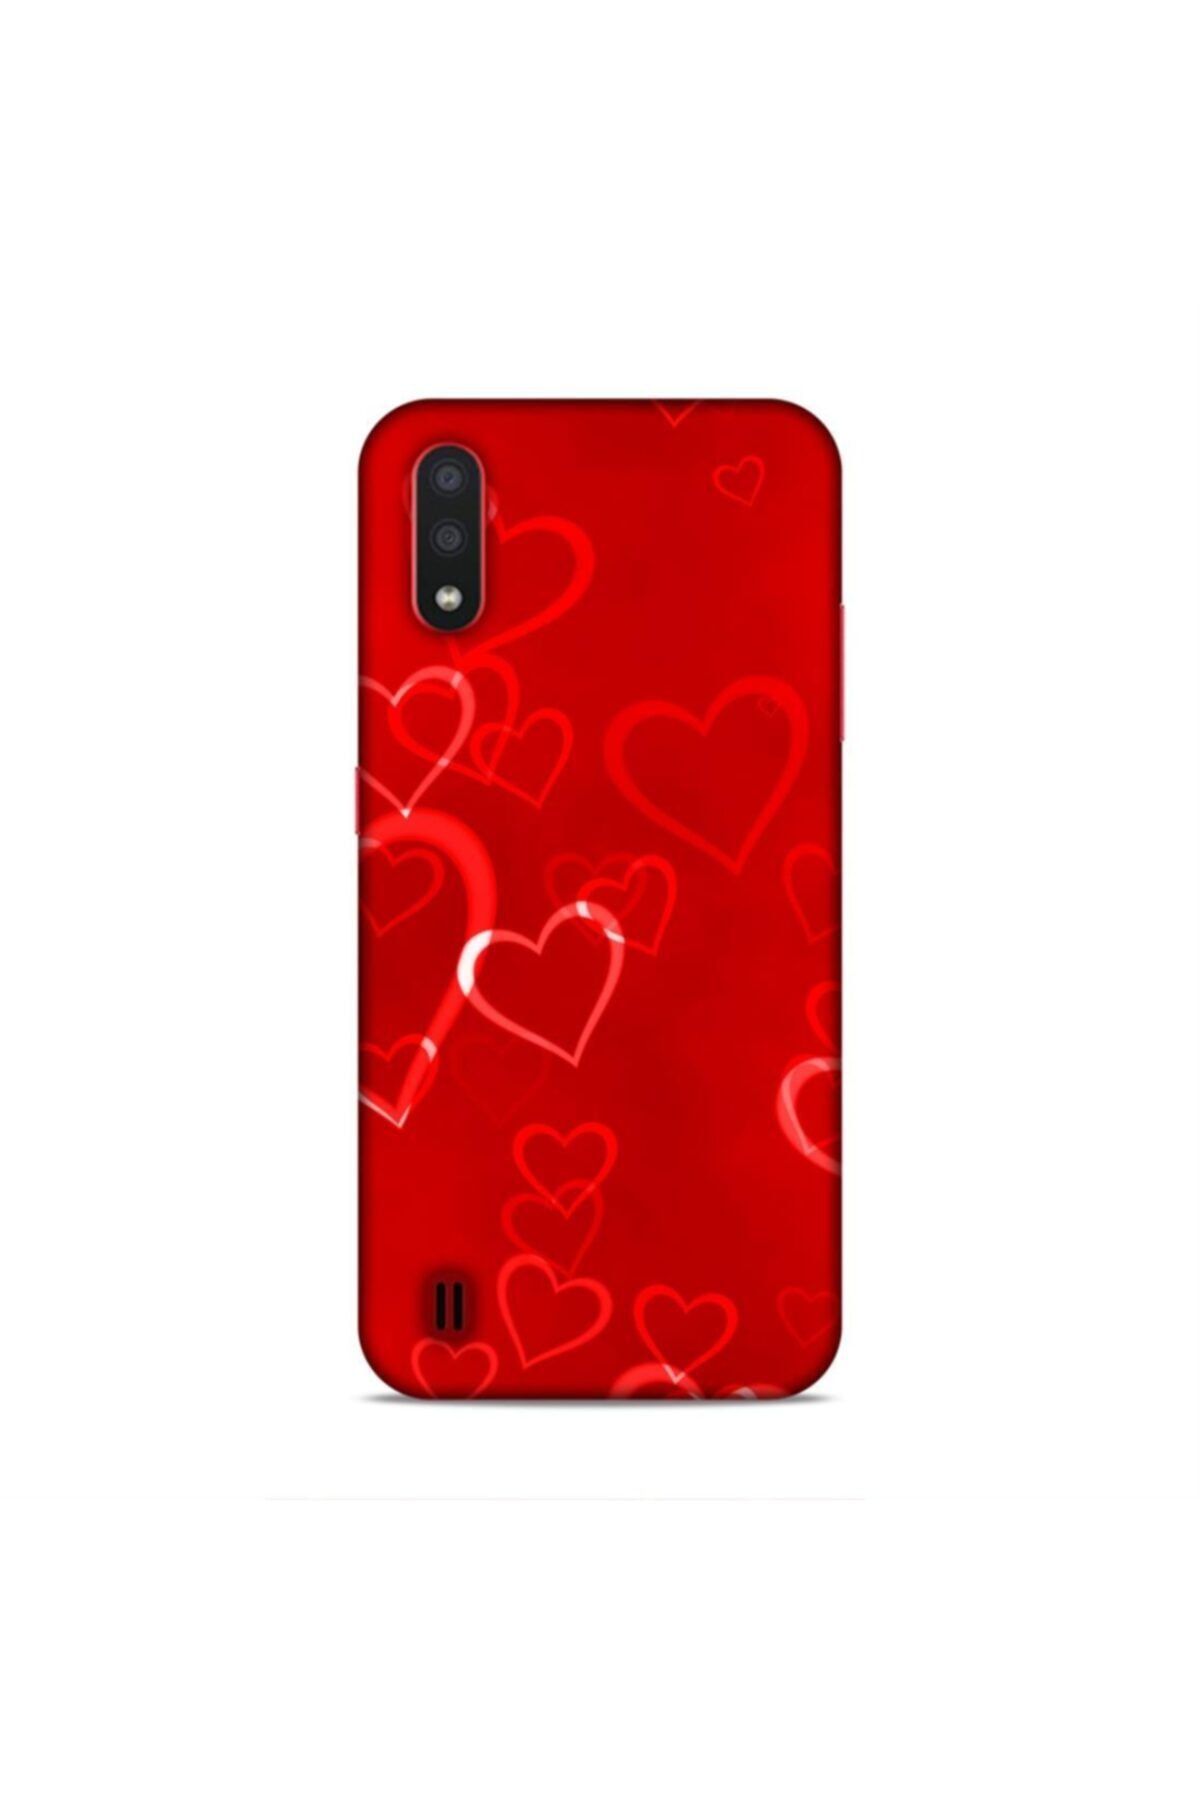 Pickcase Samsung Galaxy A01 Kılıf Desenli Arka Kapak Kırmızı Kalpler